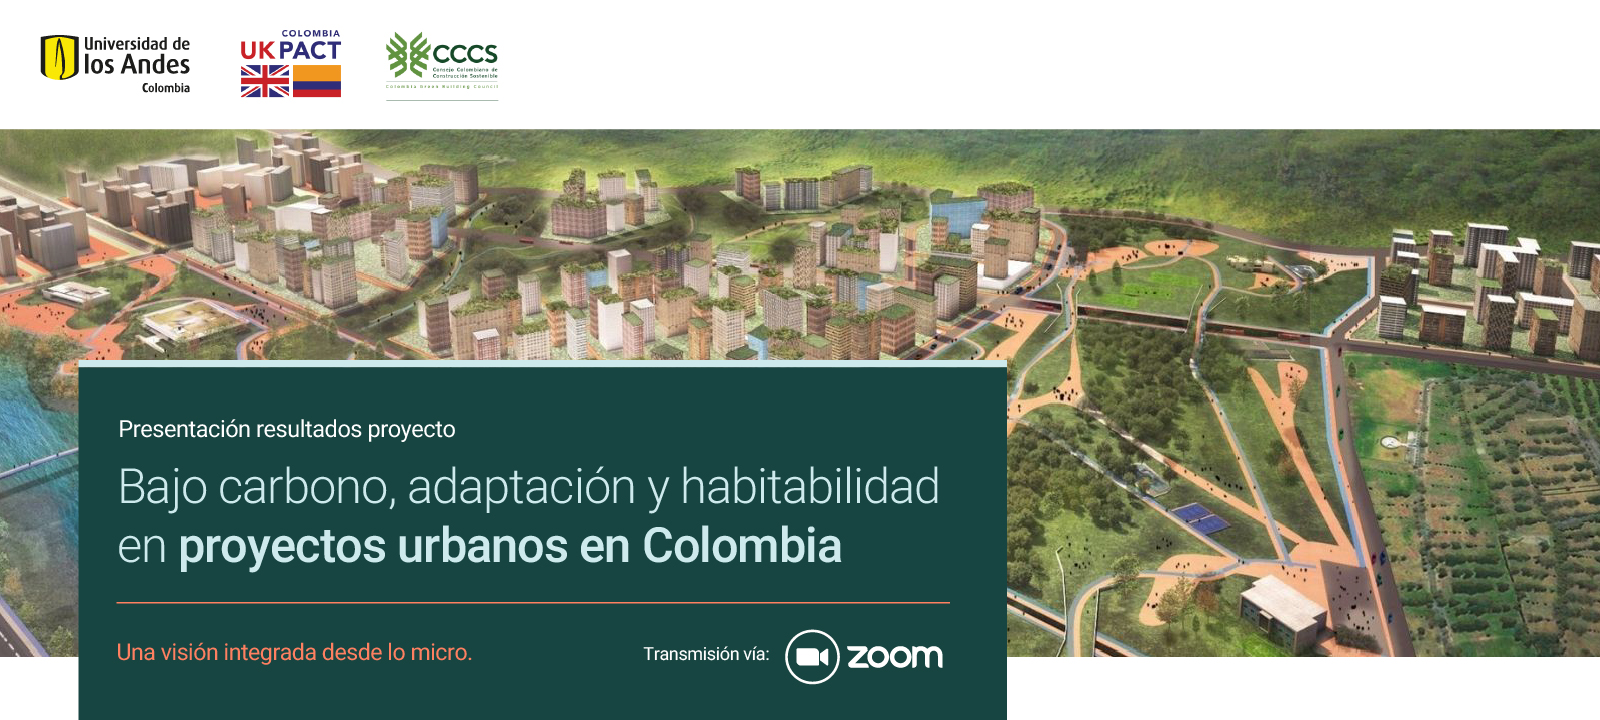 Presentación proyecto - Bajo carbono, adaptación y habitabilidad en proyectos urbanos en Colombia